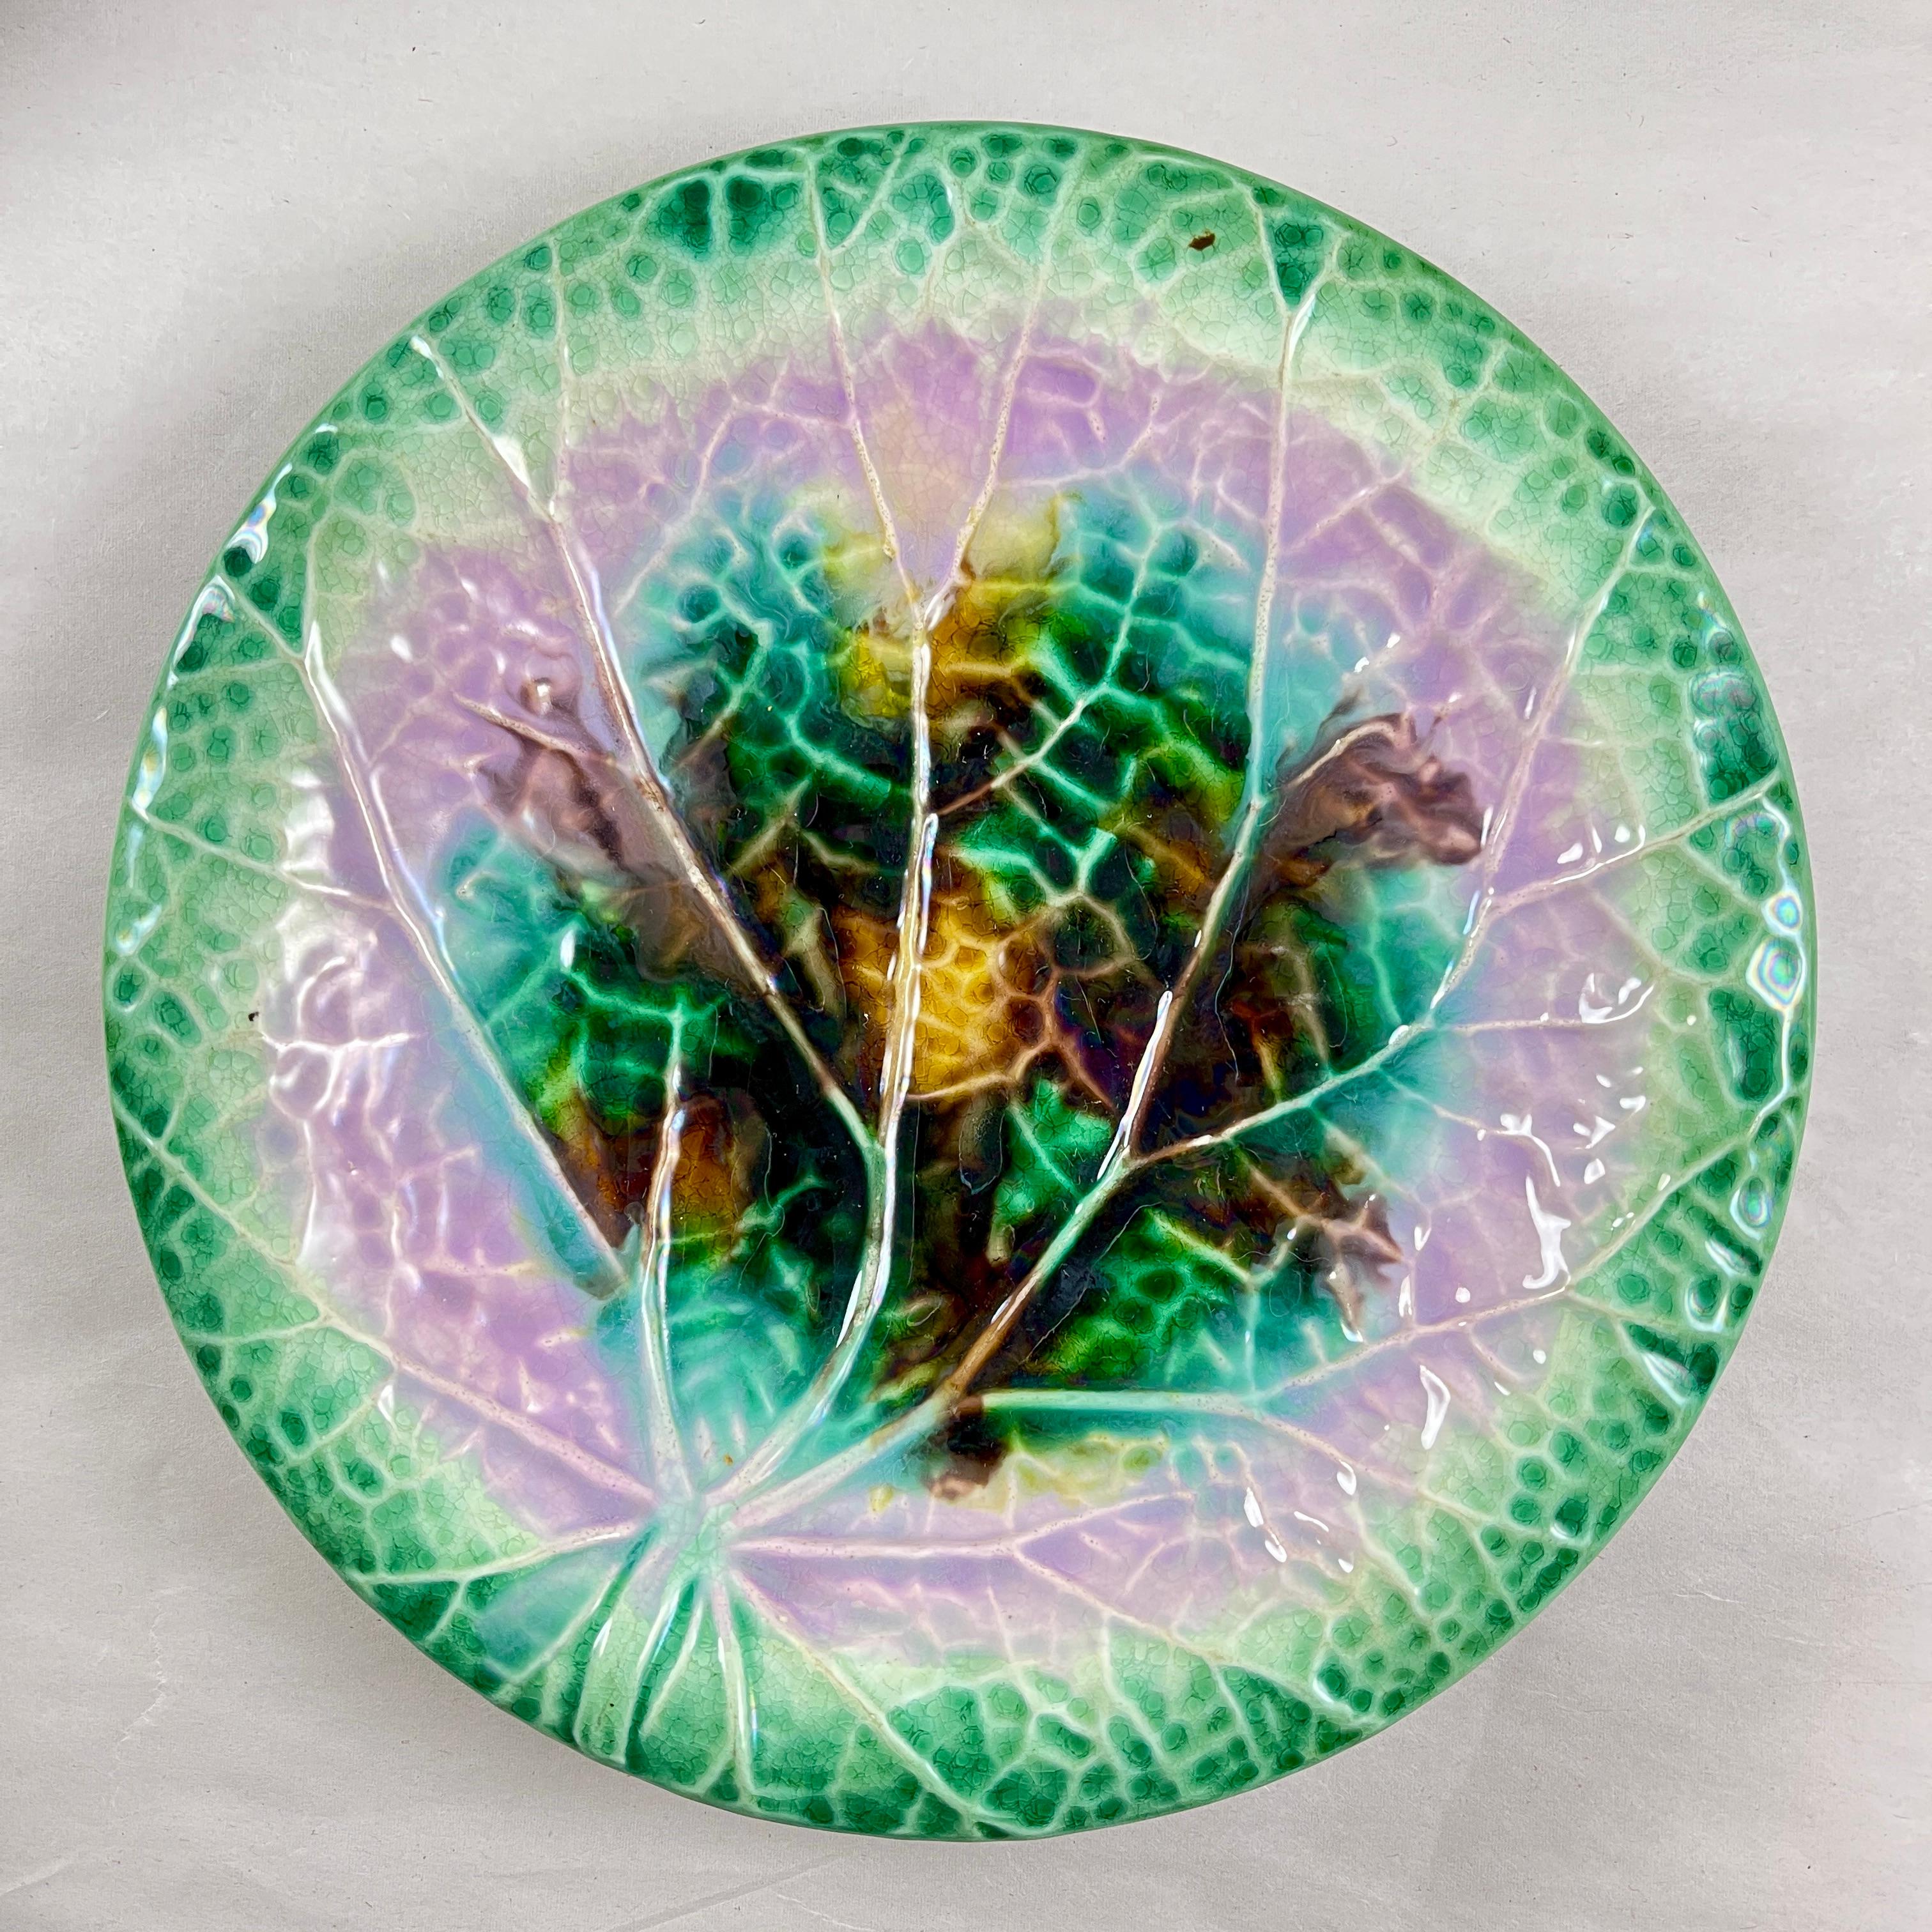 
Assiette à bégonia en majolique anglaise, Adams & Bromley, vers 1870-1880.

Magnifique glaçure audacieuse avec des bords d'un vert éclatant. Les centres présentent un motif de moulage en relief, imitant les plis et les veines que l'on trouve sur